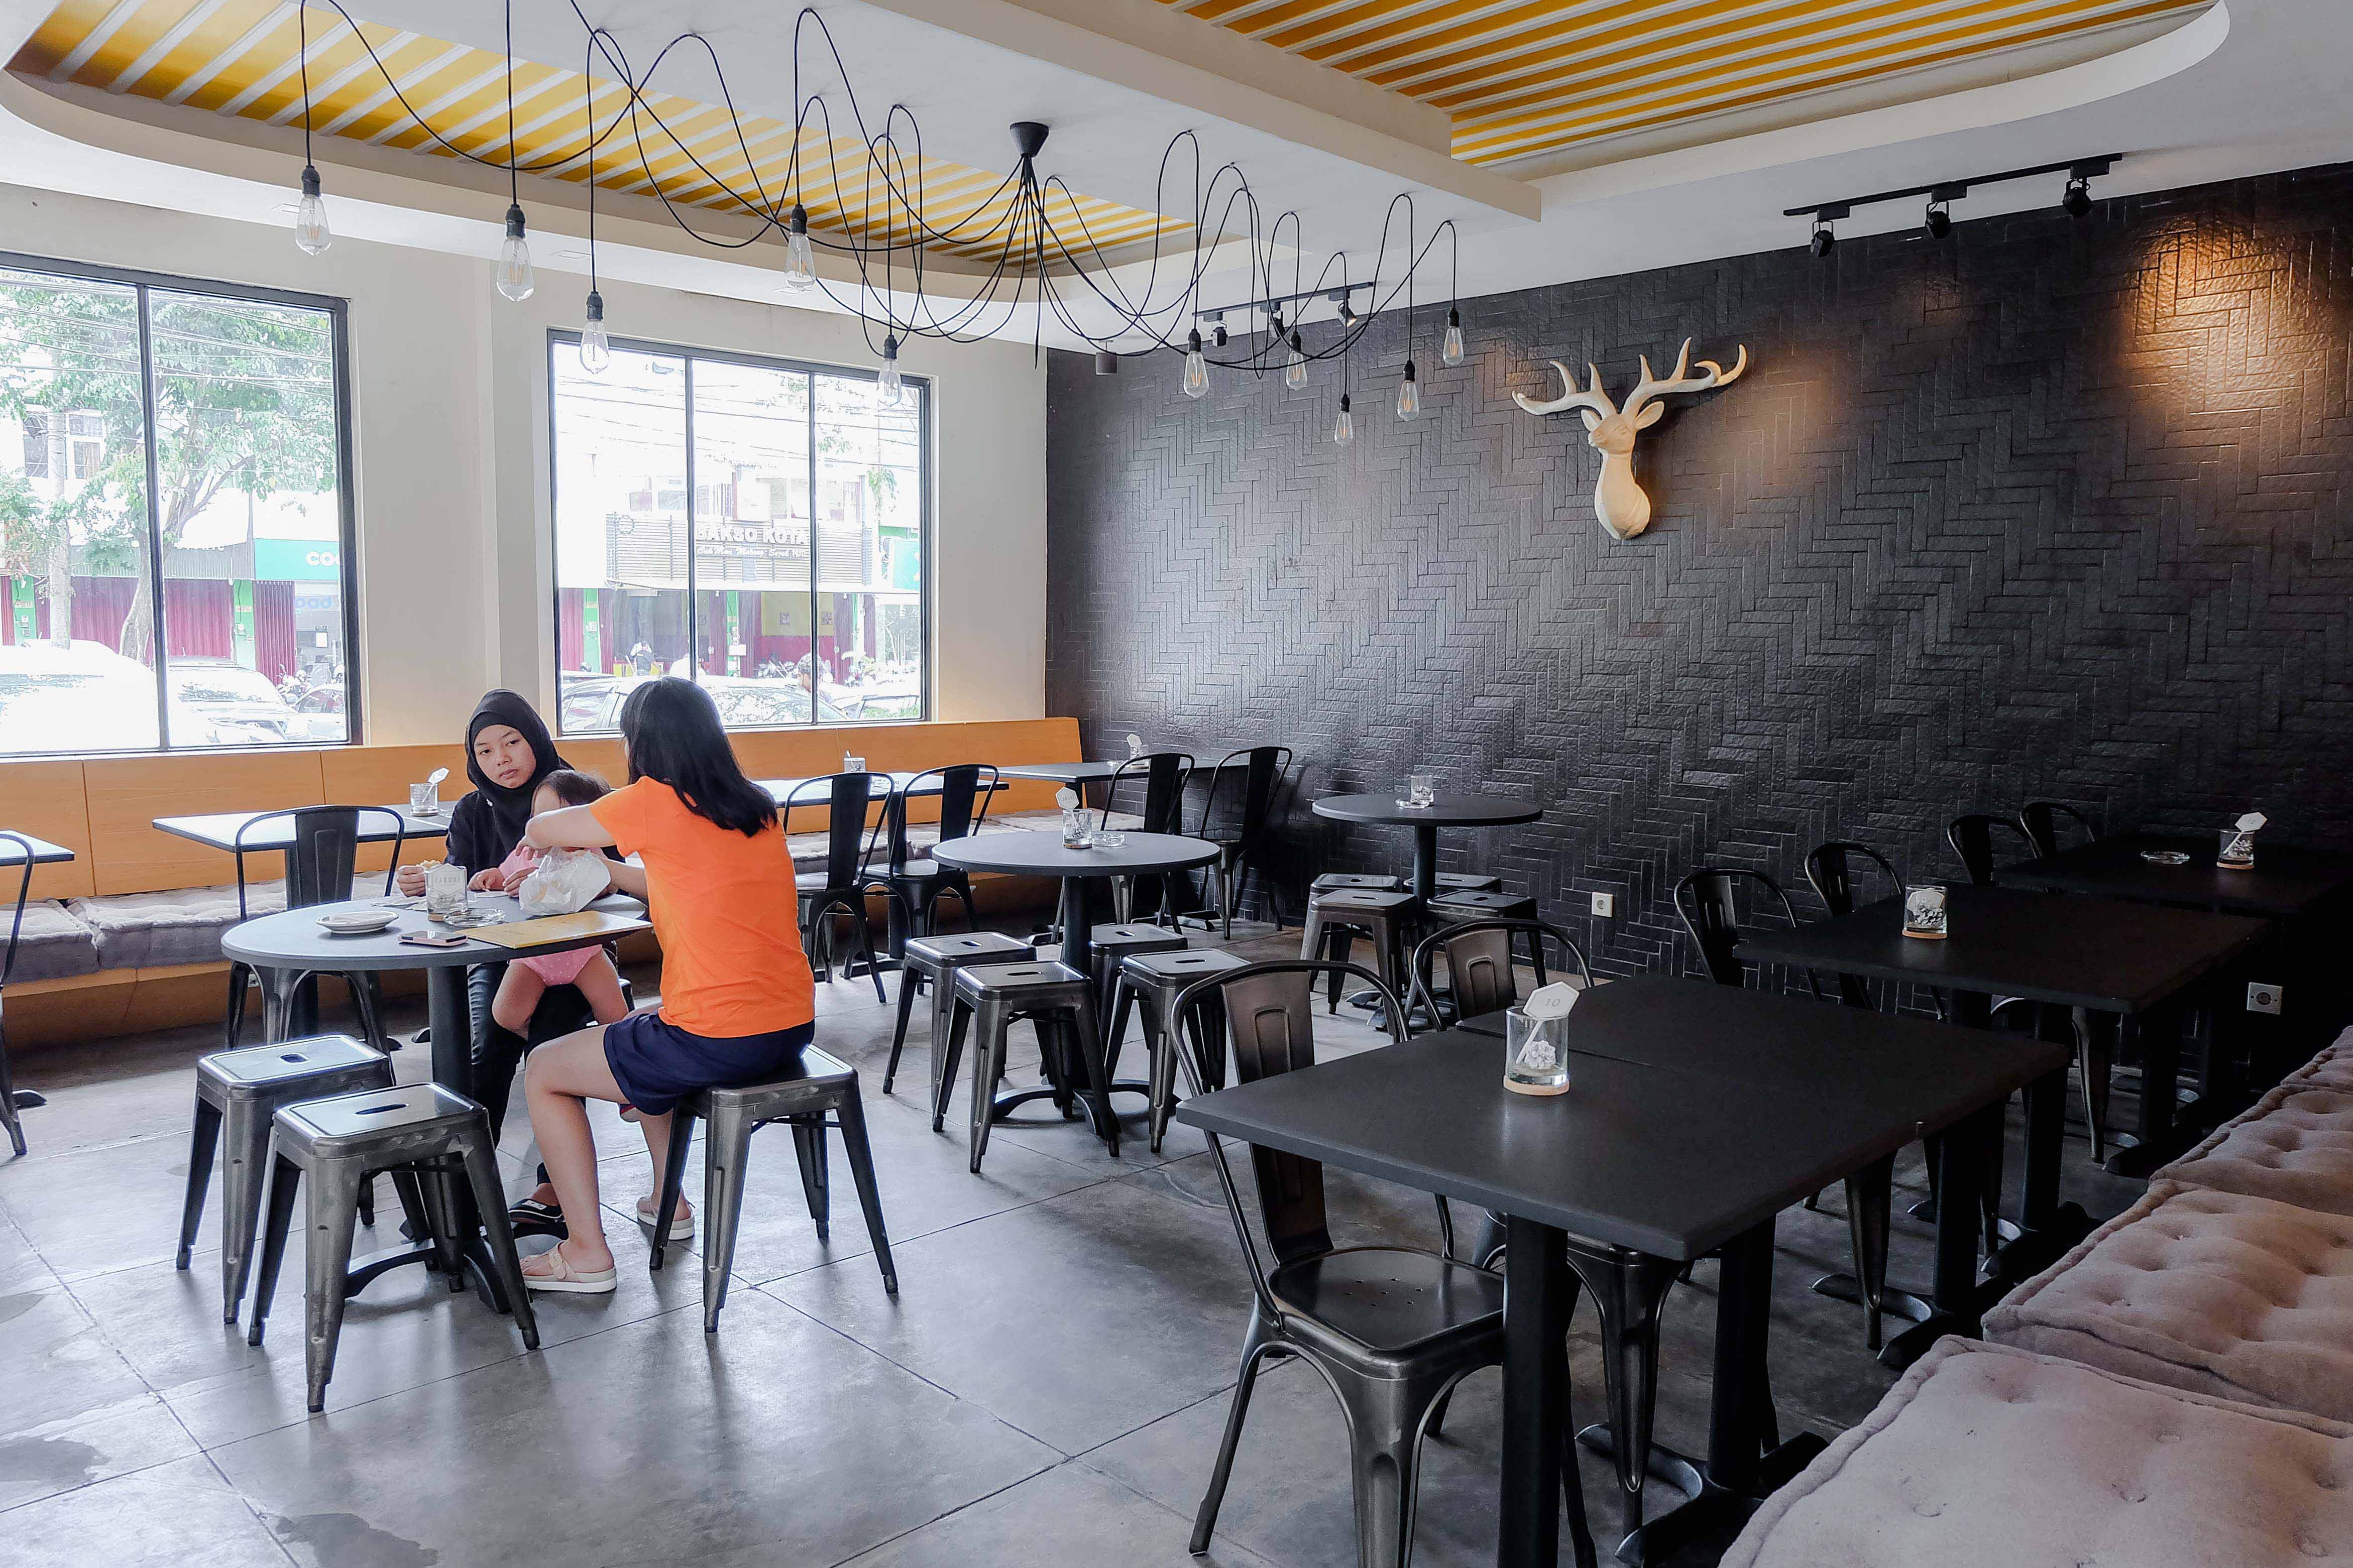 Labore Coffee Eatery, Kafe Kece dengan Menu Makanan Enak di Malang